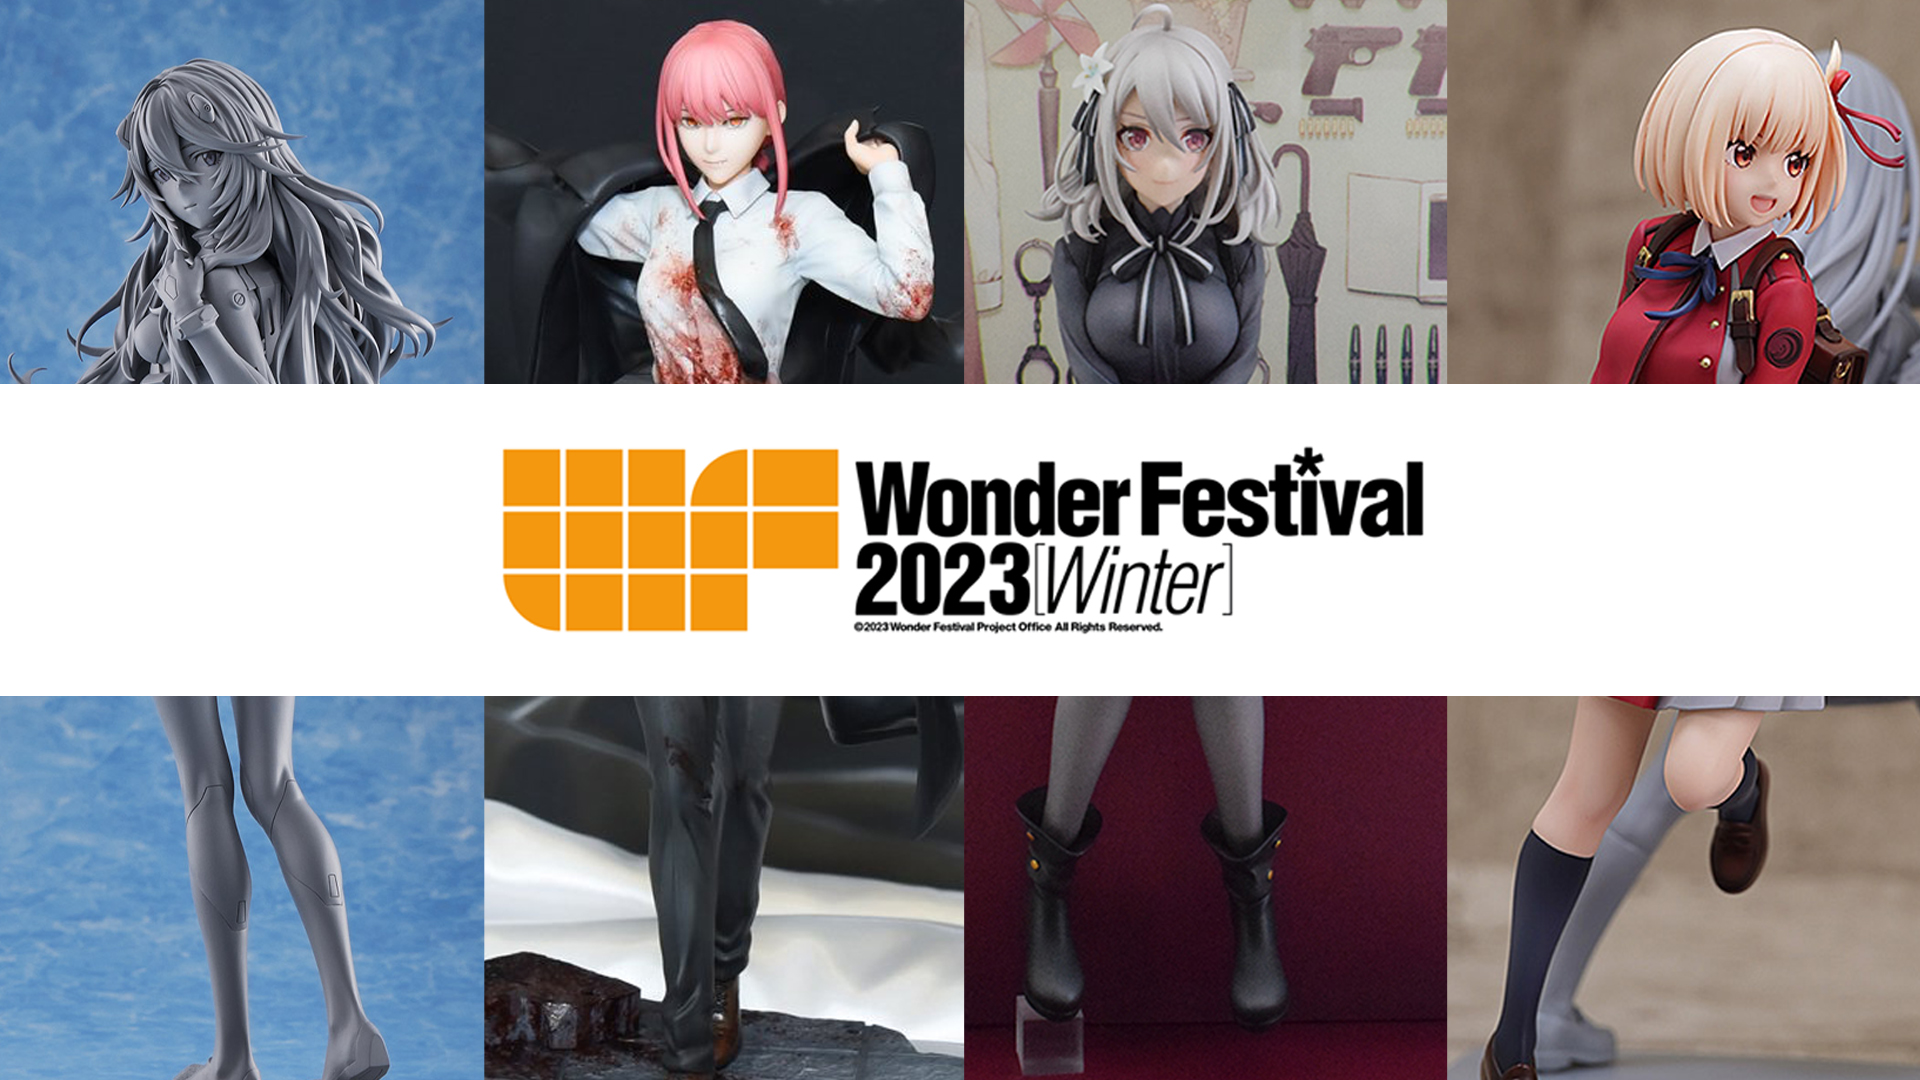 รวมภาพบรรยากาศชวนเสียเงิน Wonder Festival 2023 (Winter) งานแสดงของเล่นและป๊อปคัลเจอร์ที่ใหญ่ที่สุดในโลก